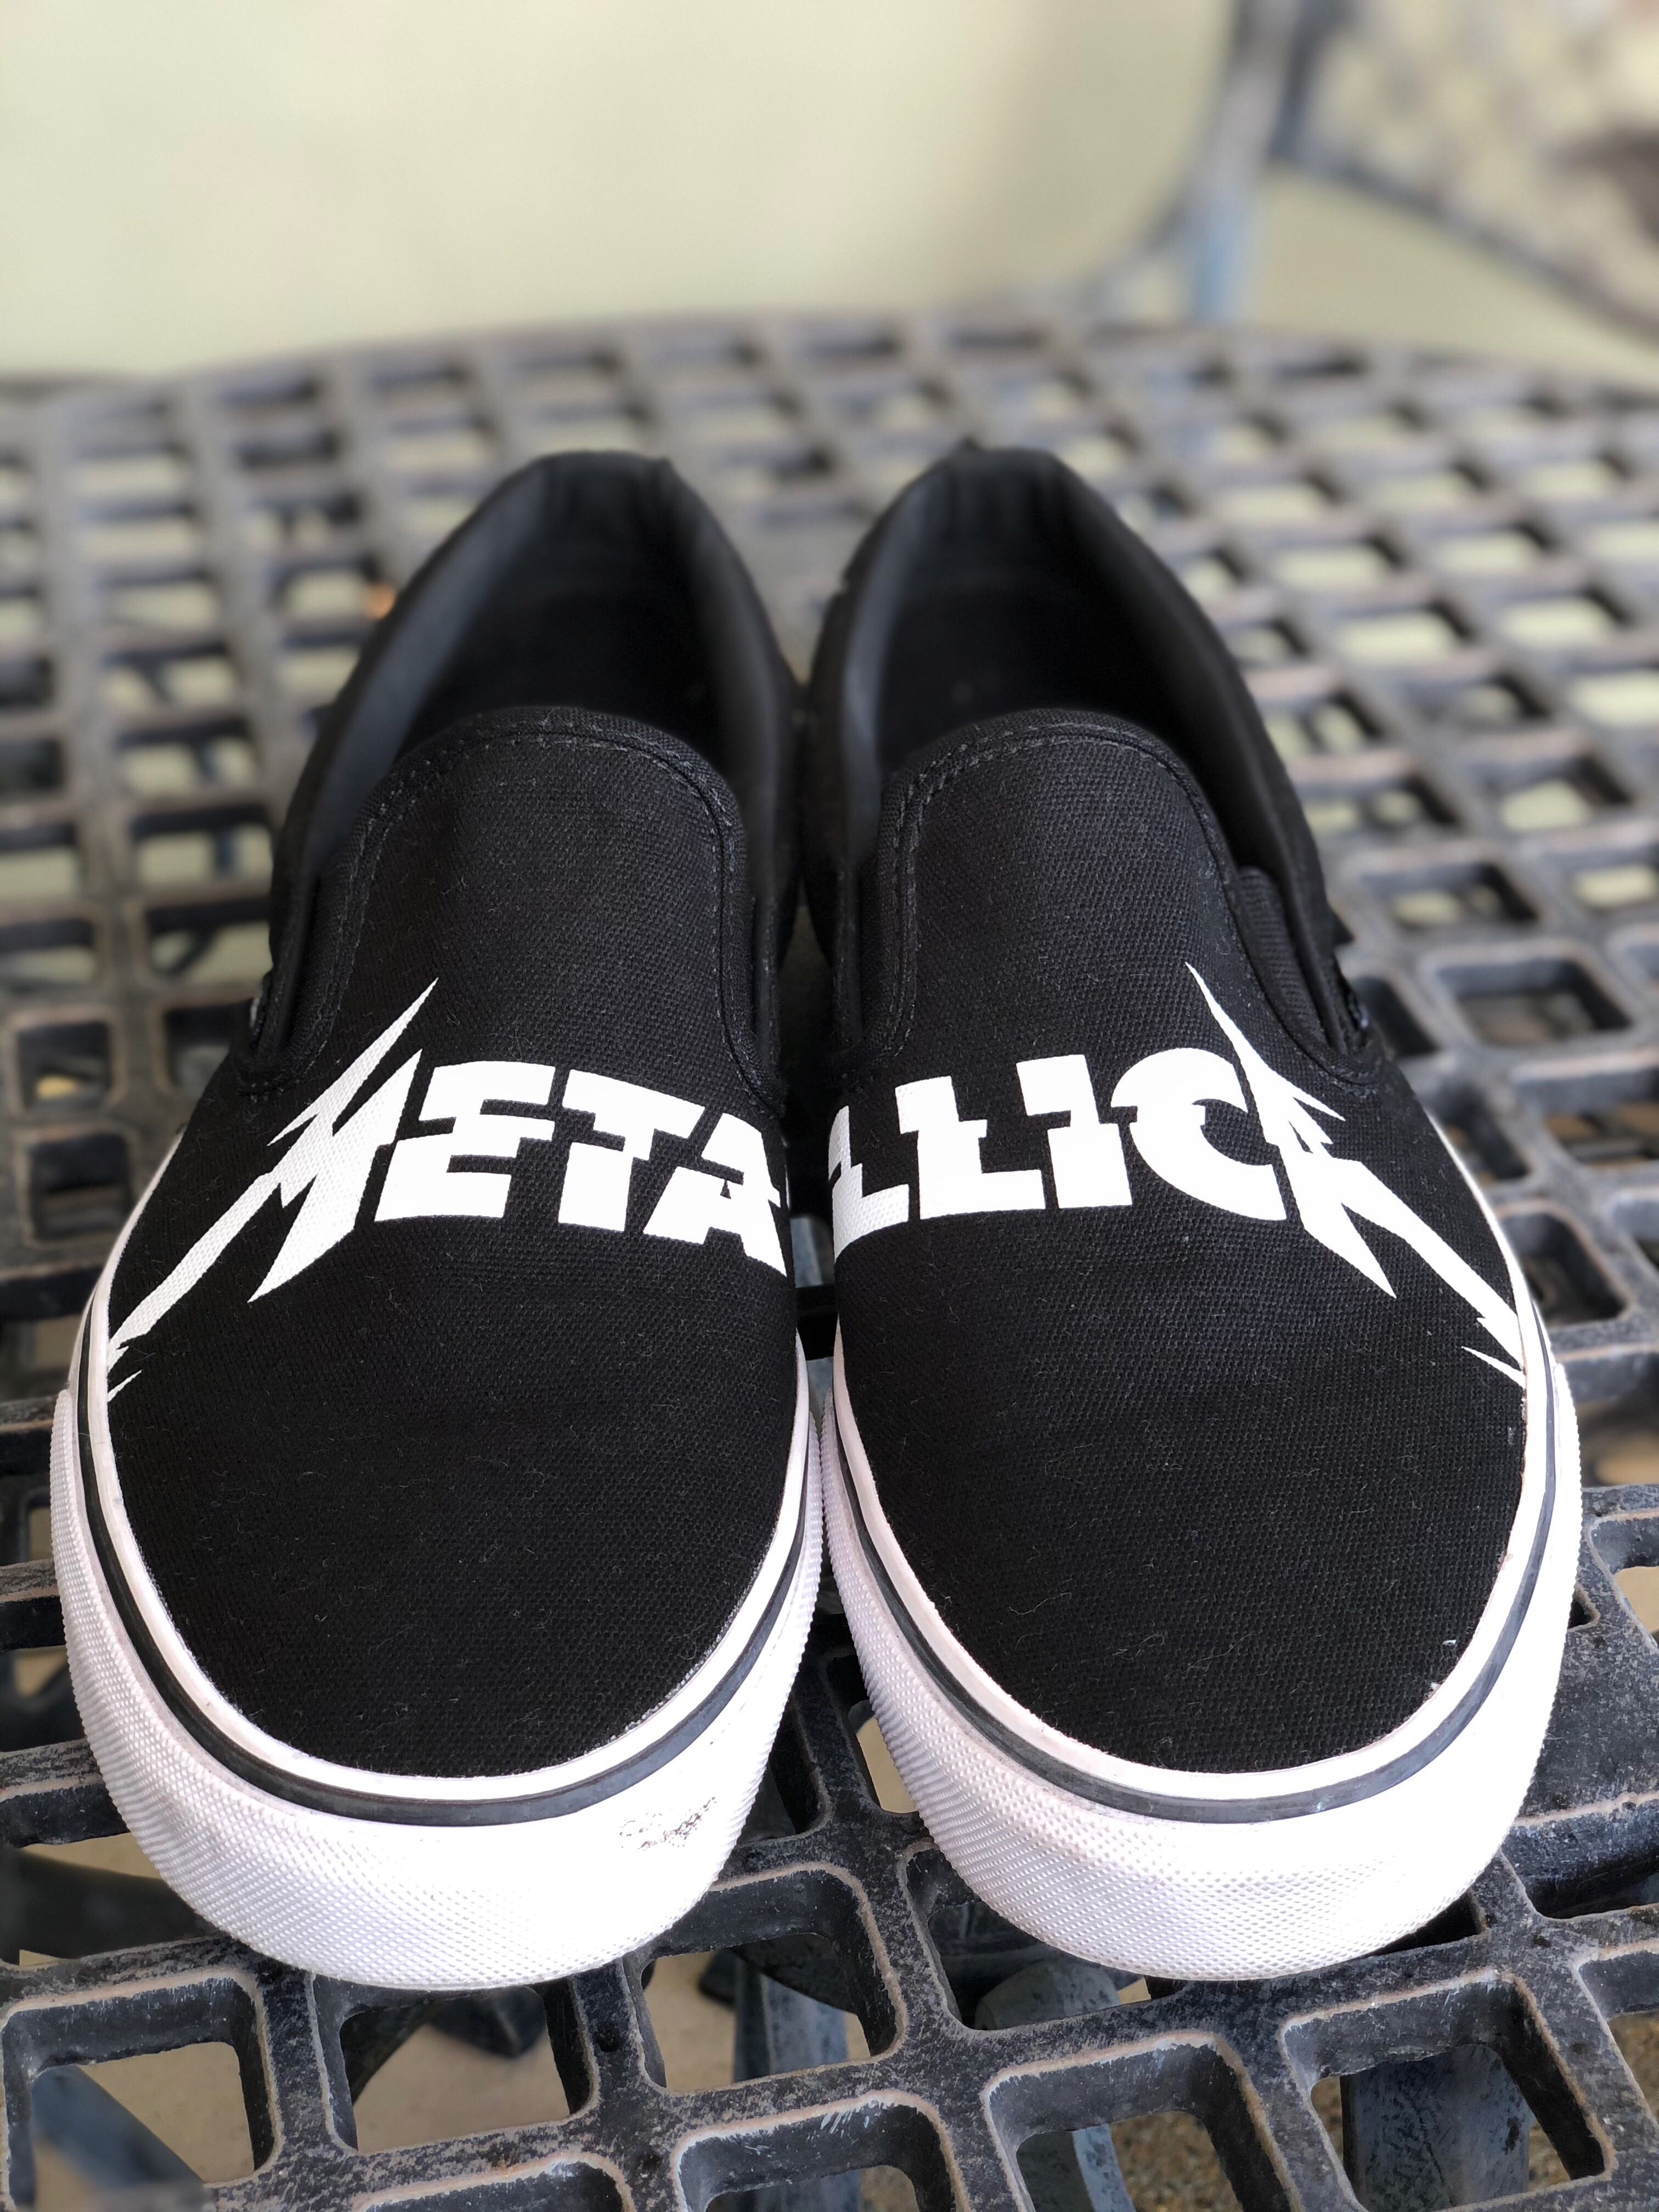 Vans x Metallica Slip-Ons, Men's 